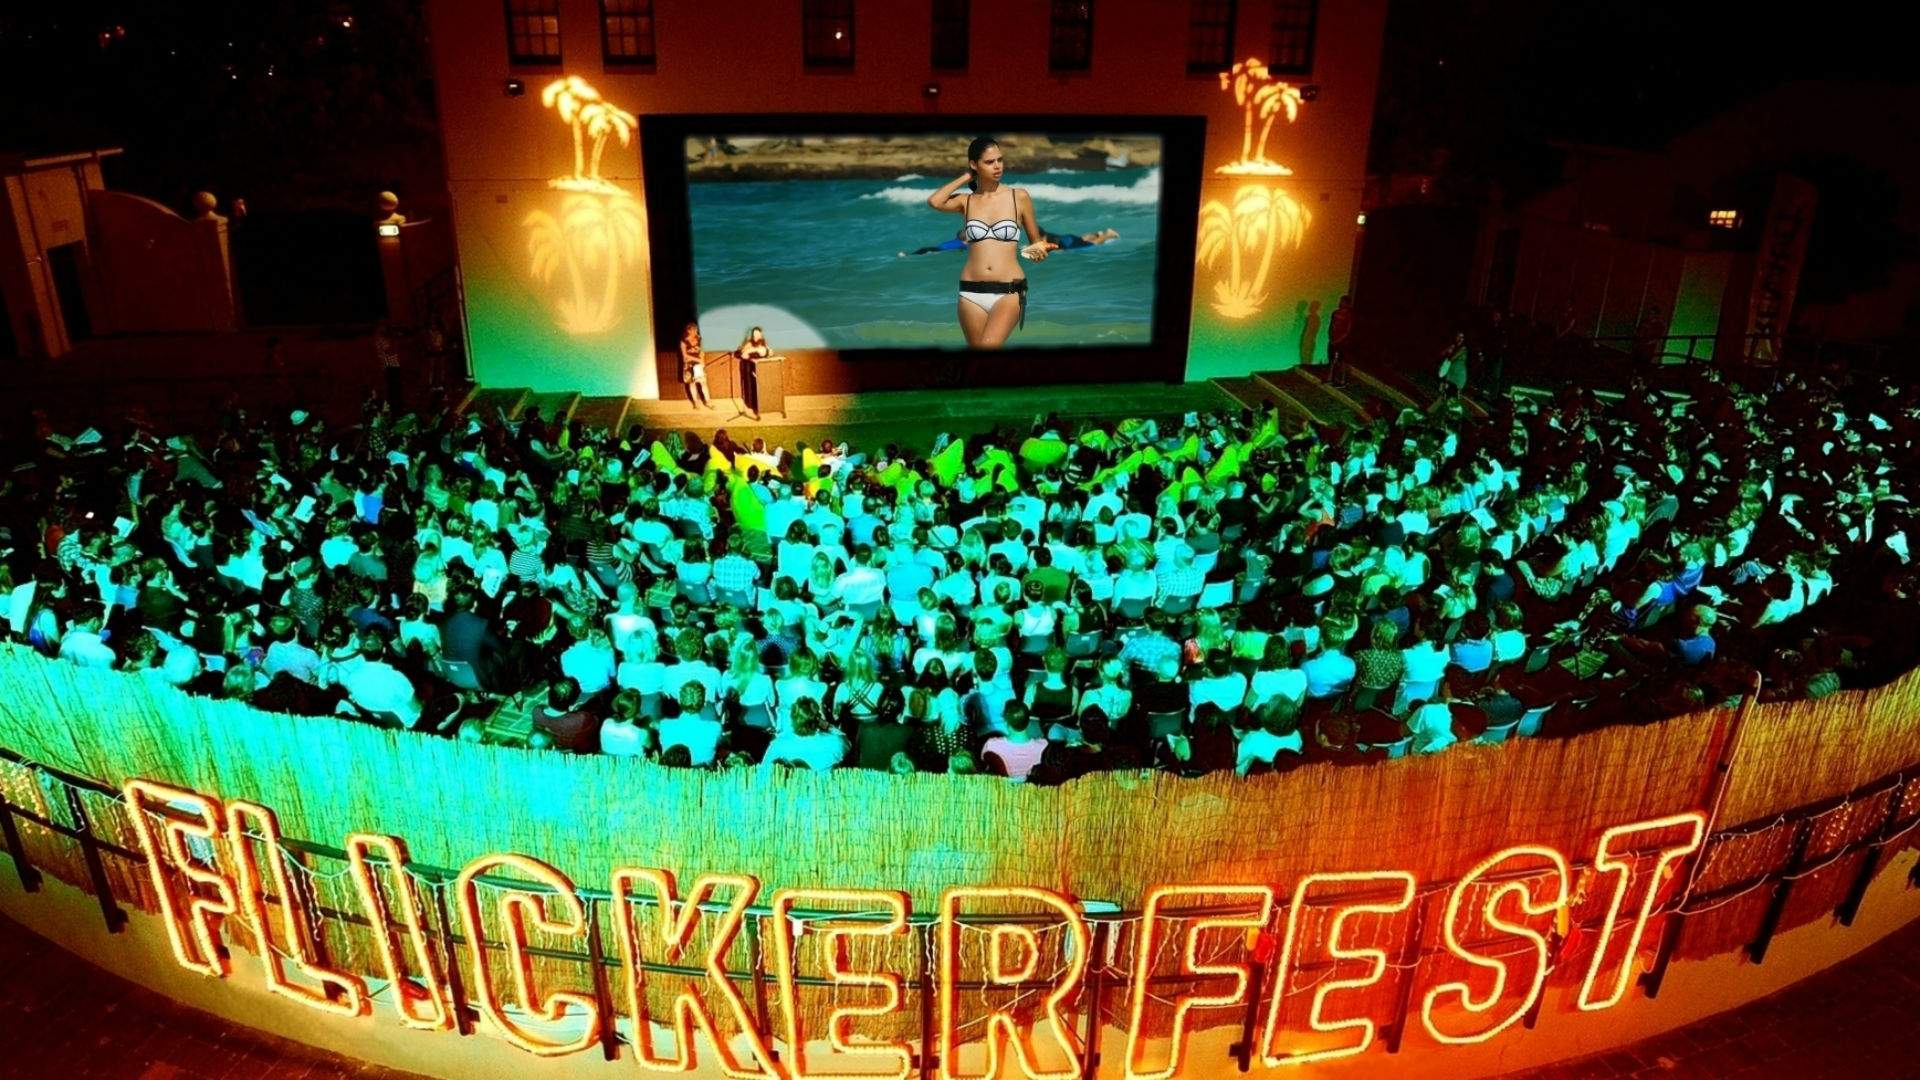 Flickerfest International Short Film Festival Sydney 2020